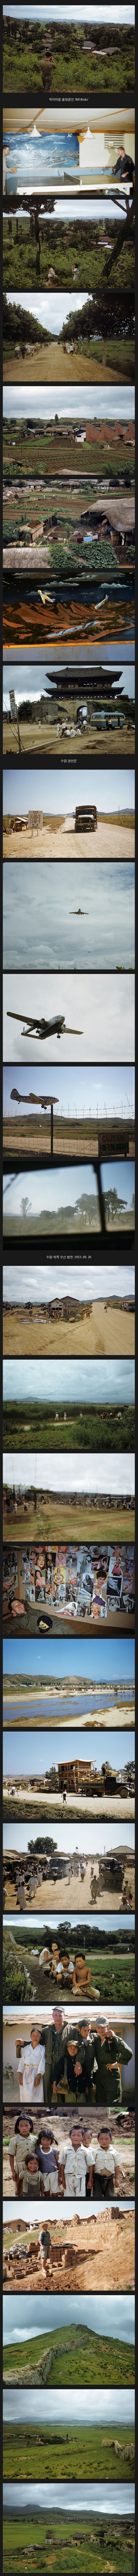 6.25 전쟁 직후 한국 사진 모음(풀컬러).png